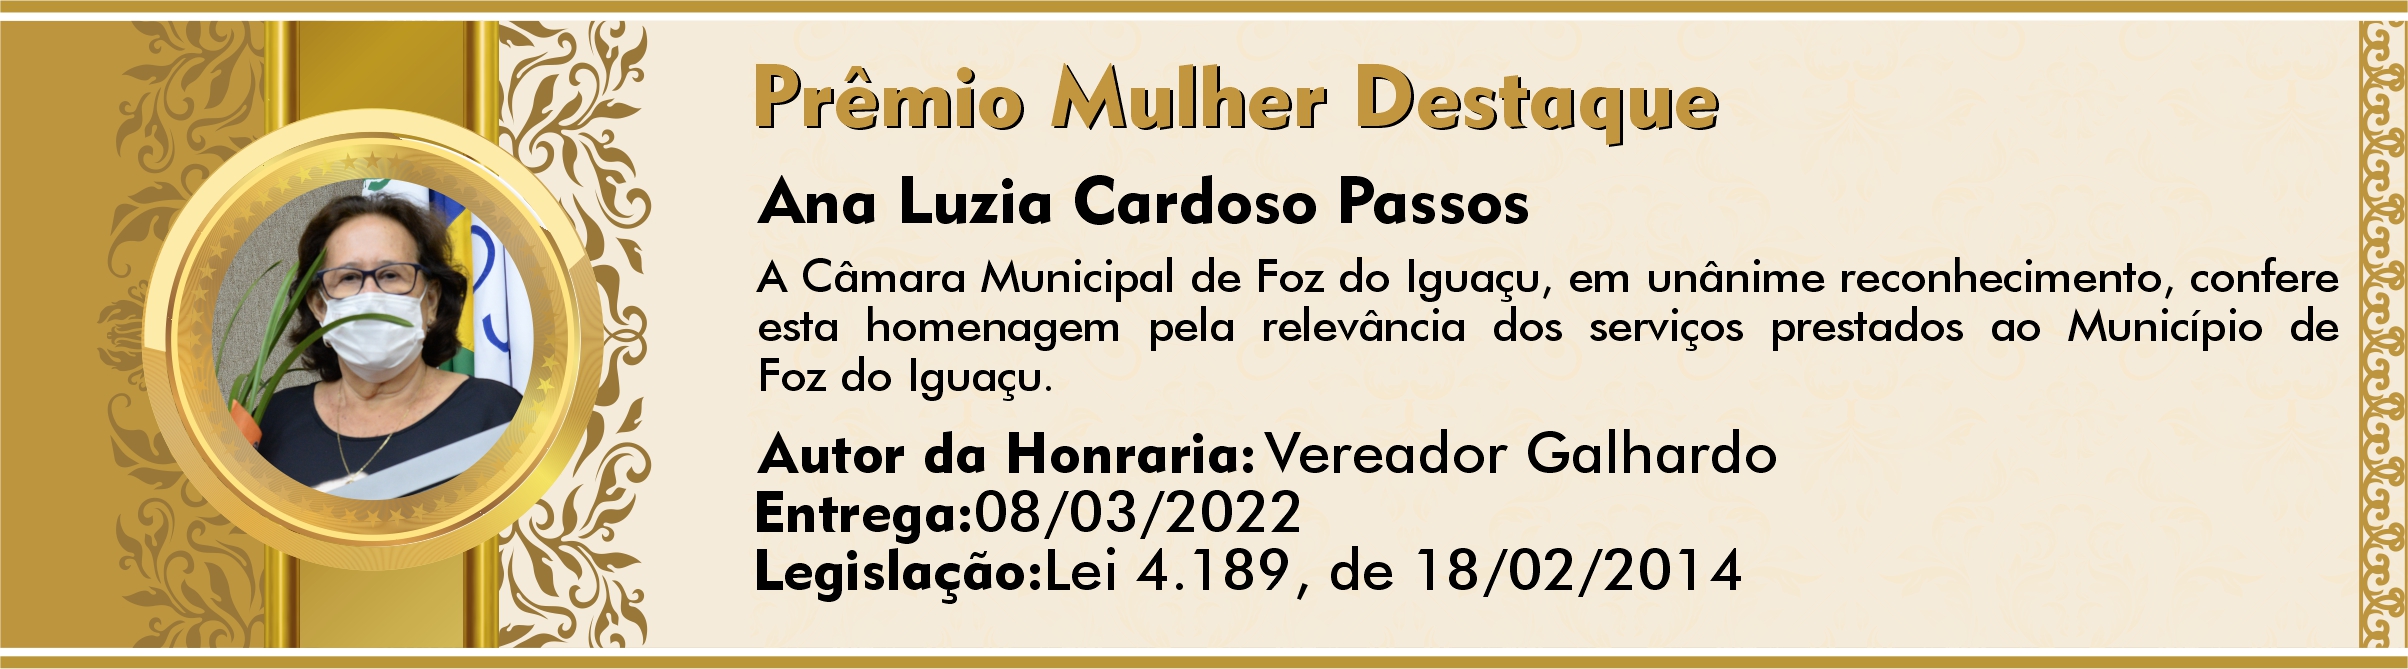 Ana Luzia Cardoso Passos